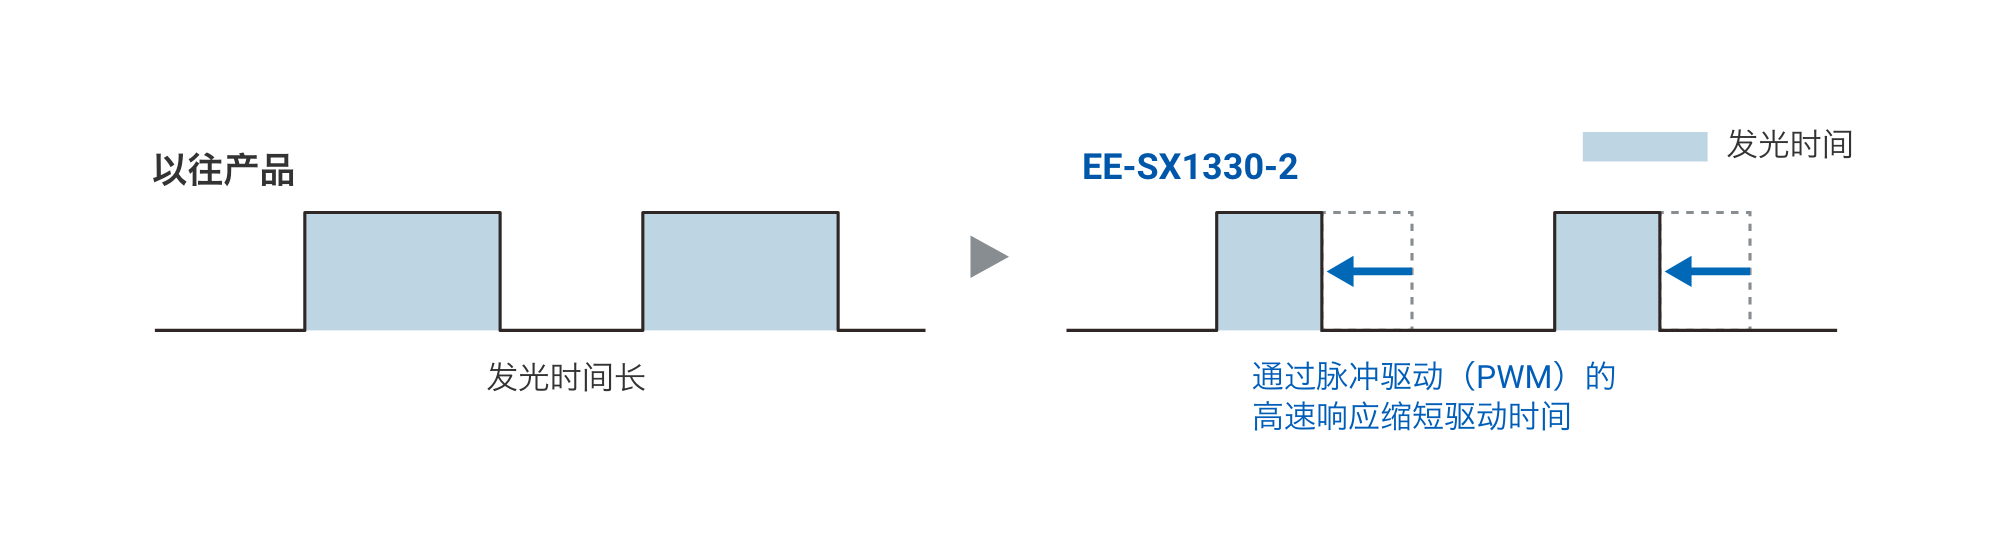 以往产品：发光时间长 => EE-SX1330-2：通过脉冲驱动（PWM）的高速响应缩短驱动时间